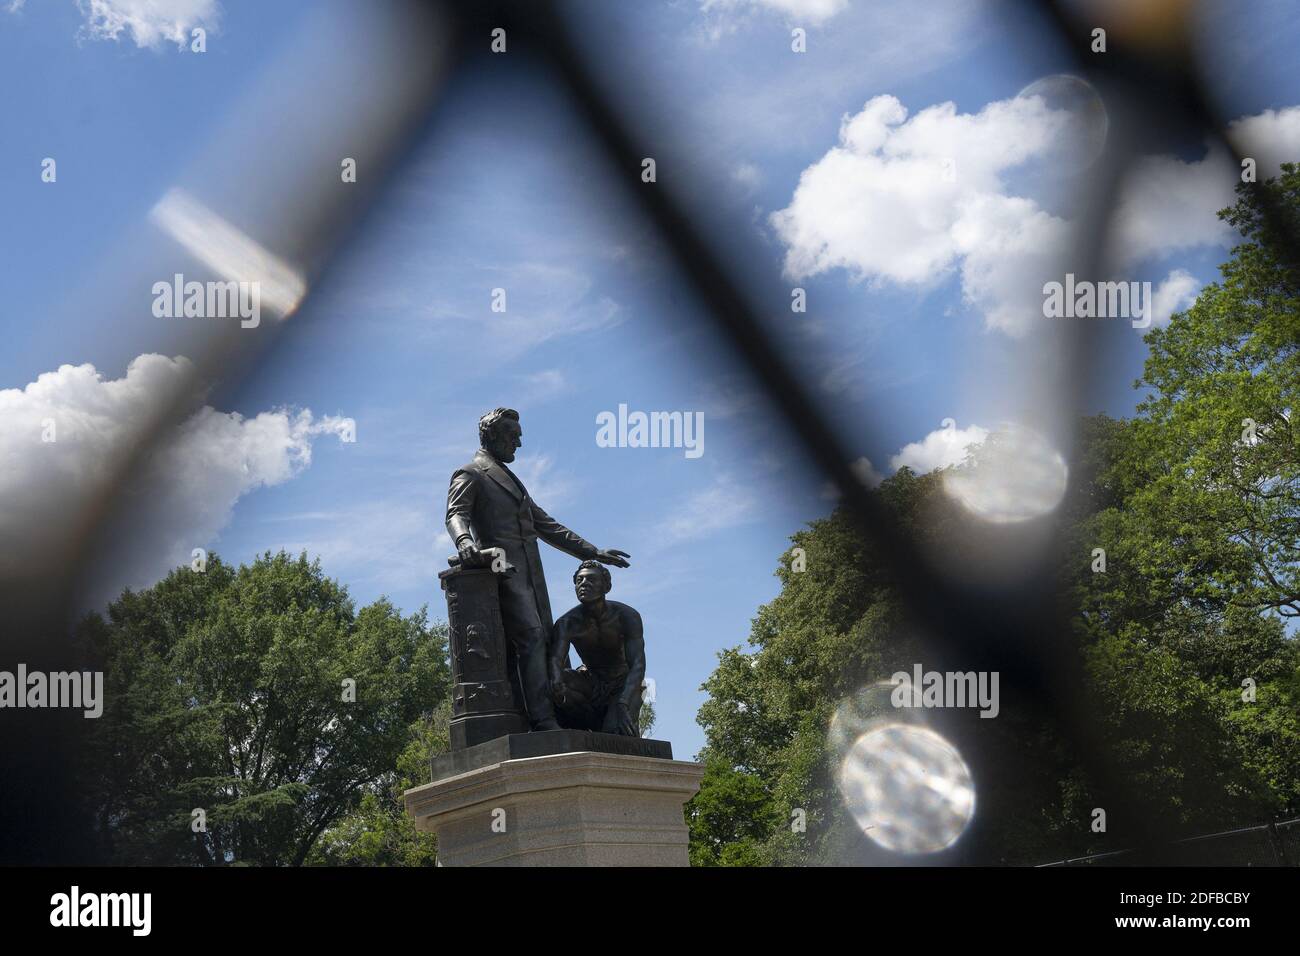 El Monumento a la emancipación se ve a través de cercas adicionales en Lincoln Park en Washington, DC, EE.UU. El lunes, 29 de junio de 2020. Muchos manifestantes han pedido la remoción de la estatua en las últimas semanas. Foto de Stefani Reynolds/CNP/ABACAPRESS.COM Foto de stock